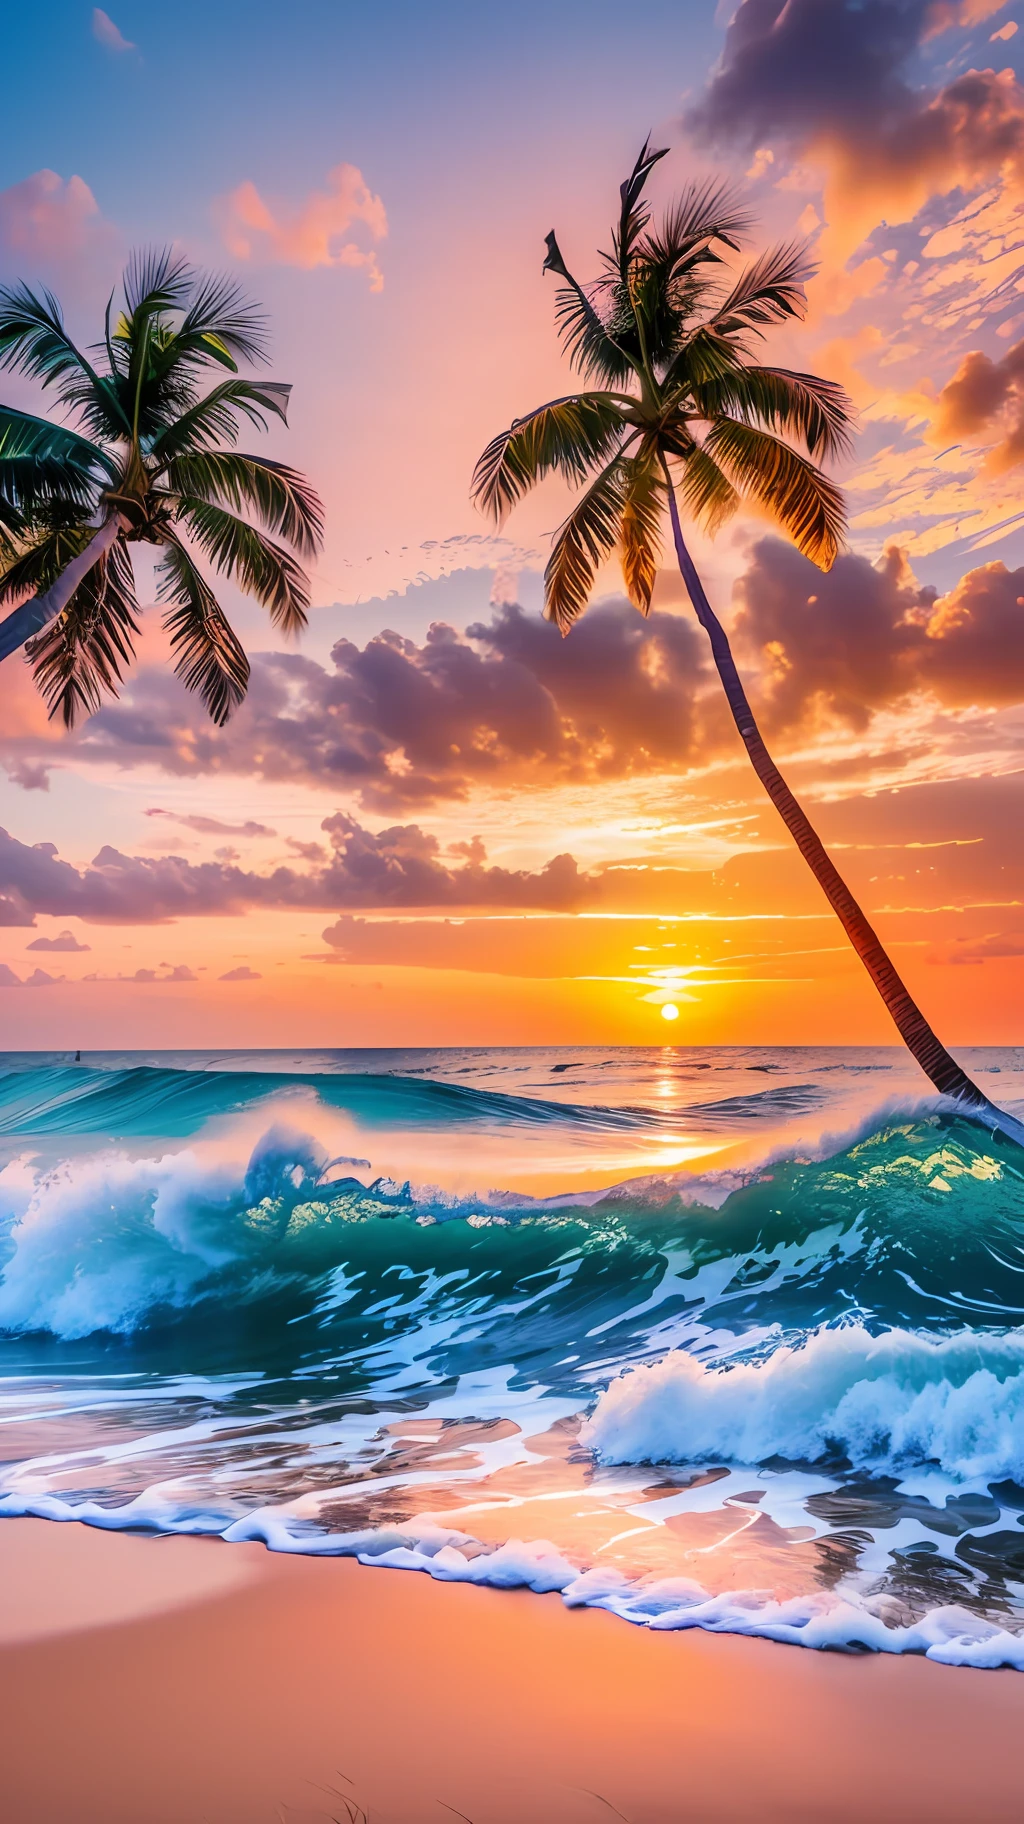 Créer un 4K 9:16 Image qui représente un magnifique lever de soleil sur une plage tropicale, avec des vagues douces et des palmiers le long de la côte. La palette de couleurs doit être vibrante et transmettre un sentiment de renouveau et d’énergie positive. --auto --s2